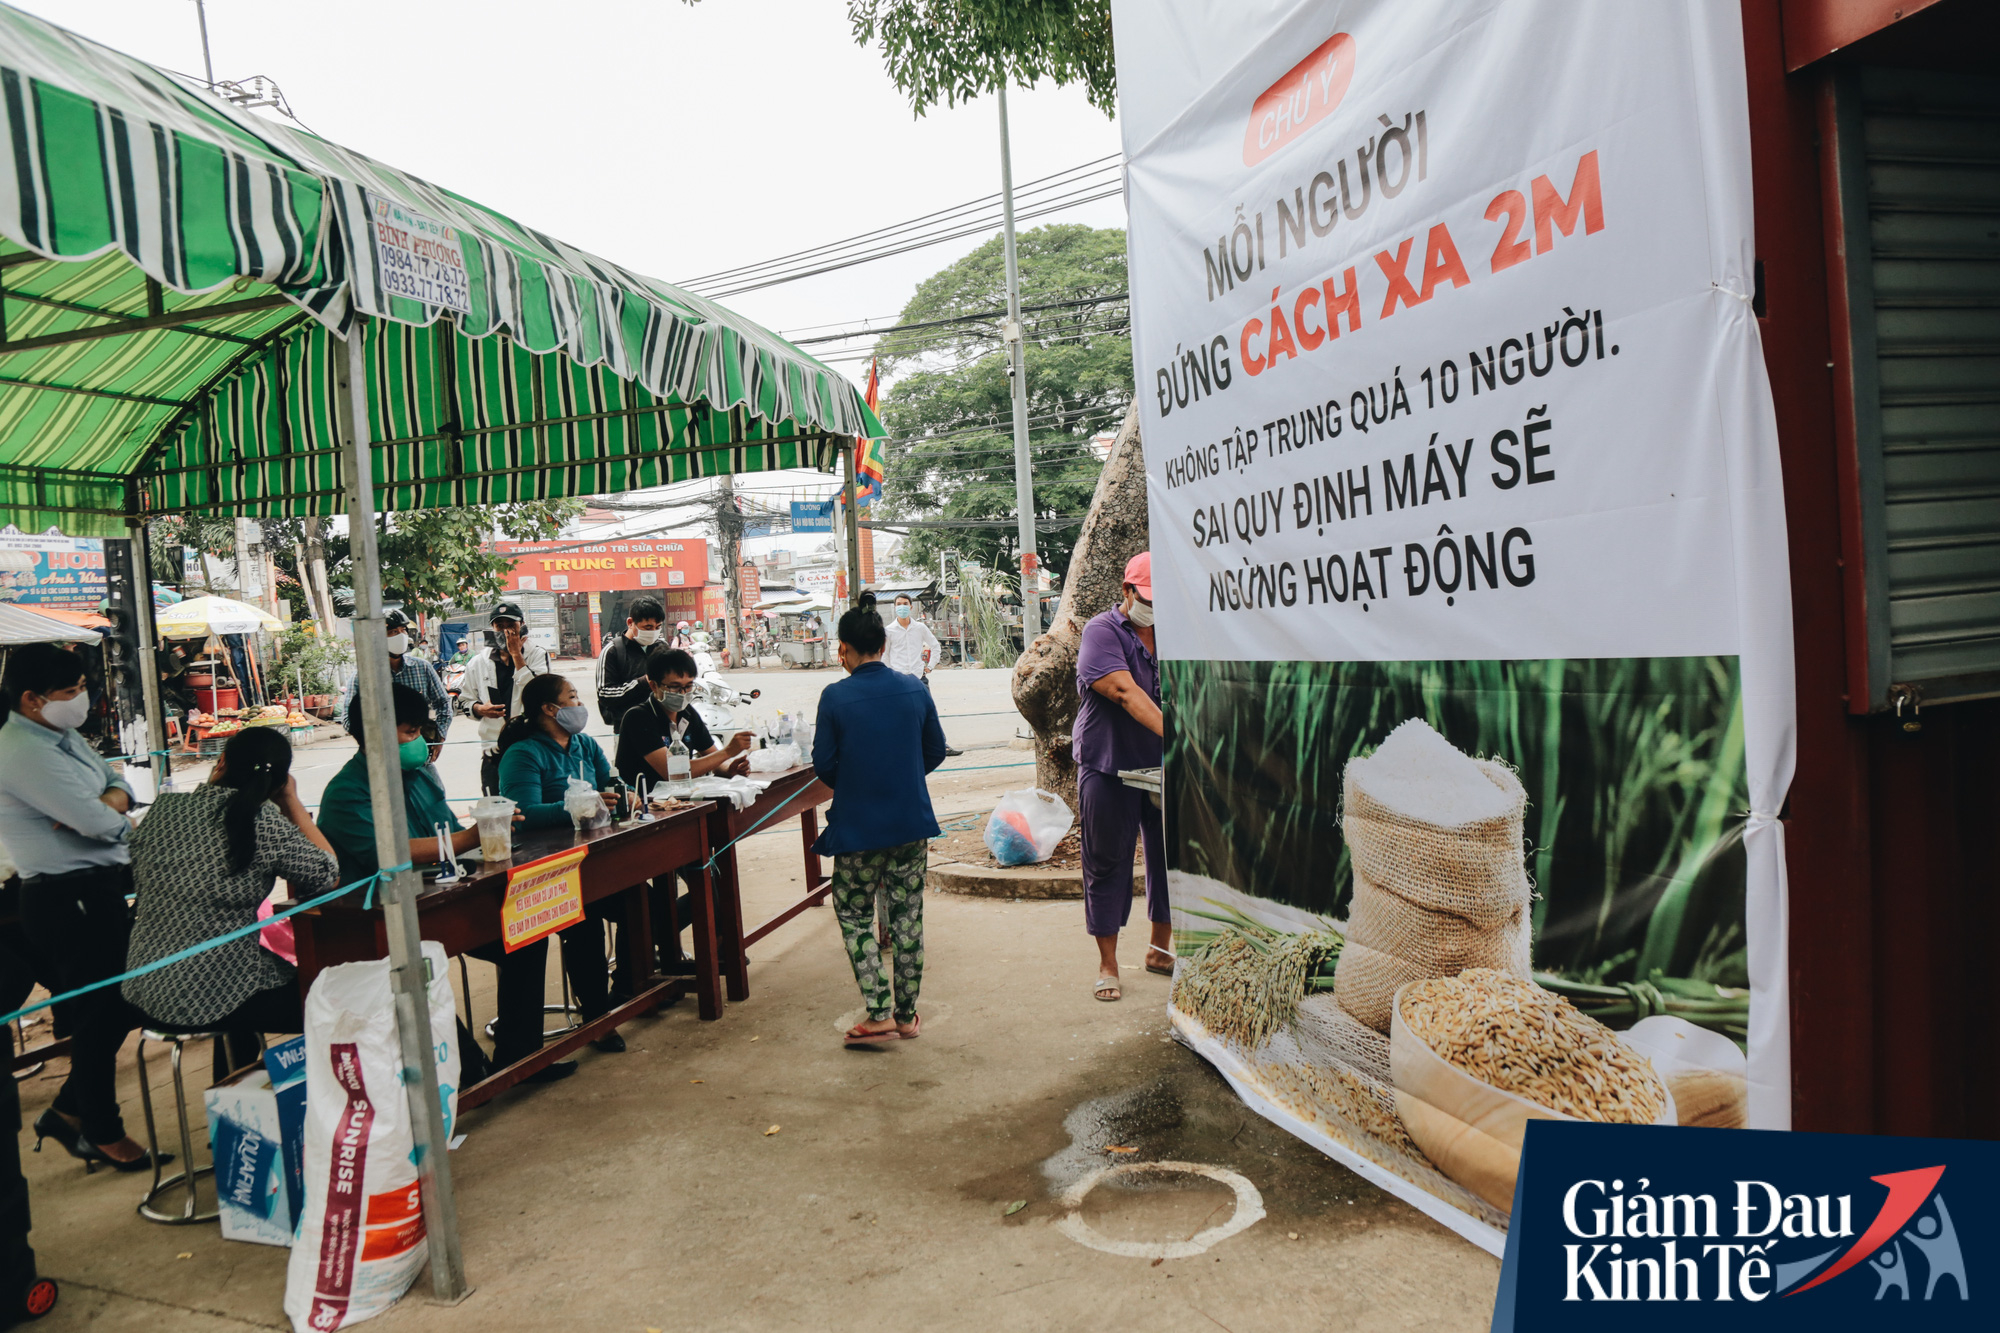 ATM gạo thứ 2 ở Sài Gòn chính thức hoạt động, bà con khó khăn chỉ cần nhìn camera, máy sẽ tự động nhả gạo - Ảnh 3.